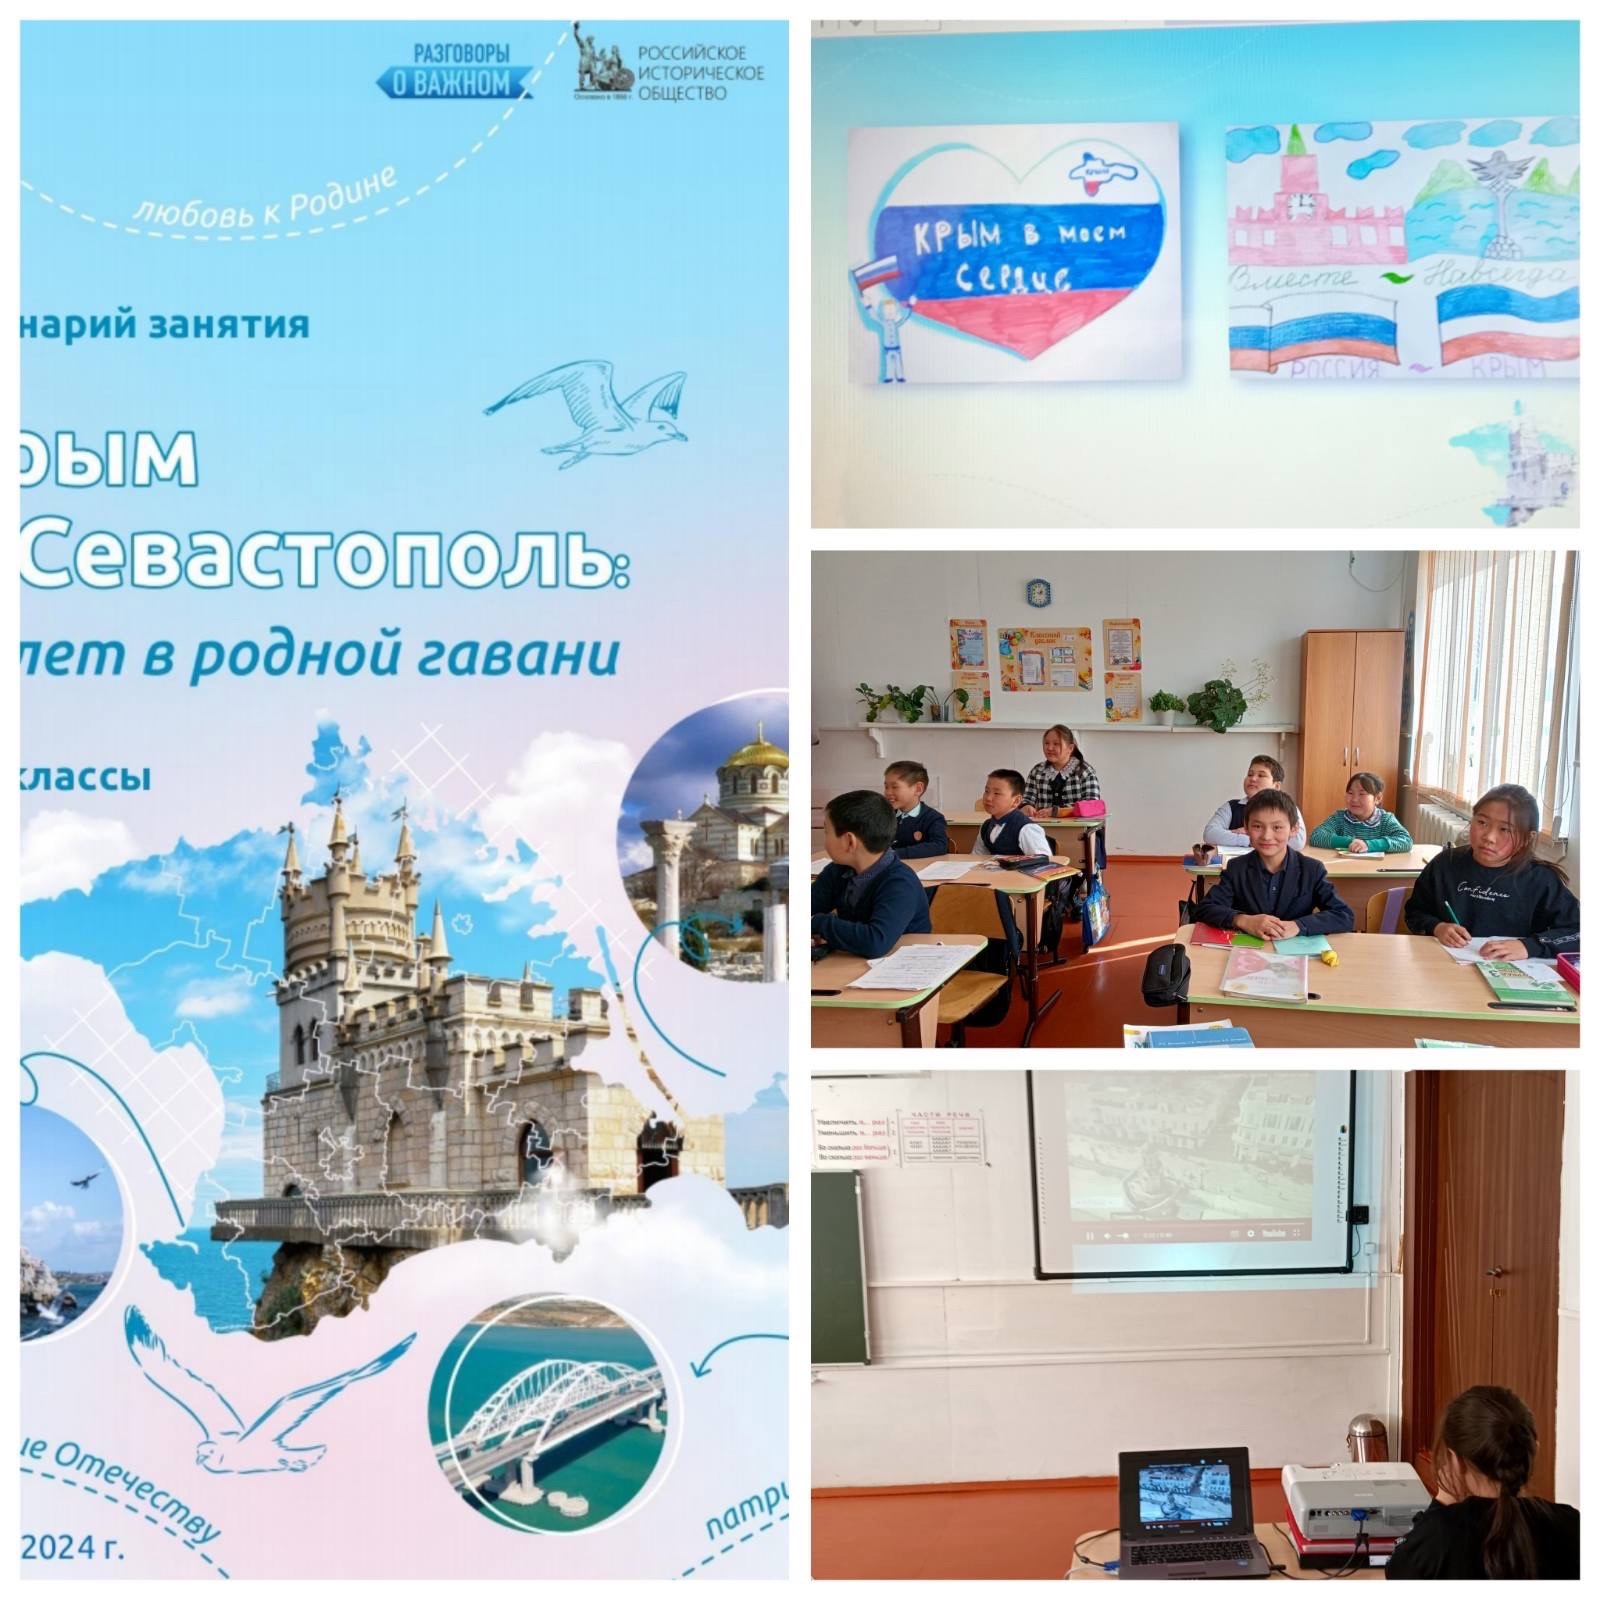 Крым и Севастополь: 10 лет в родной гавани.